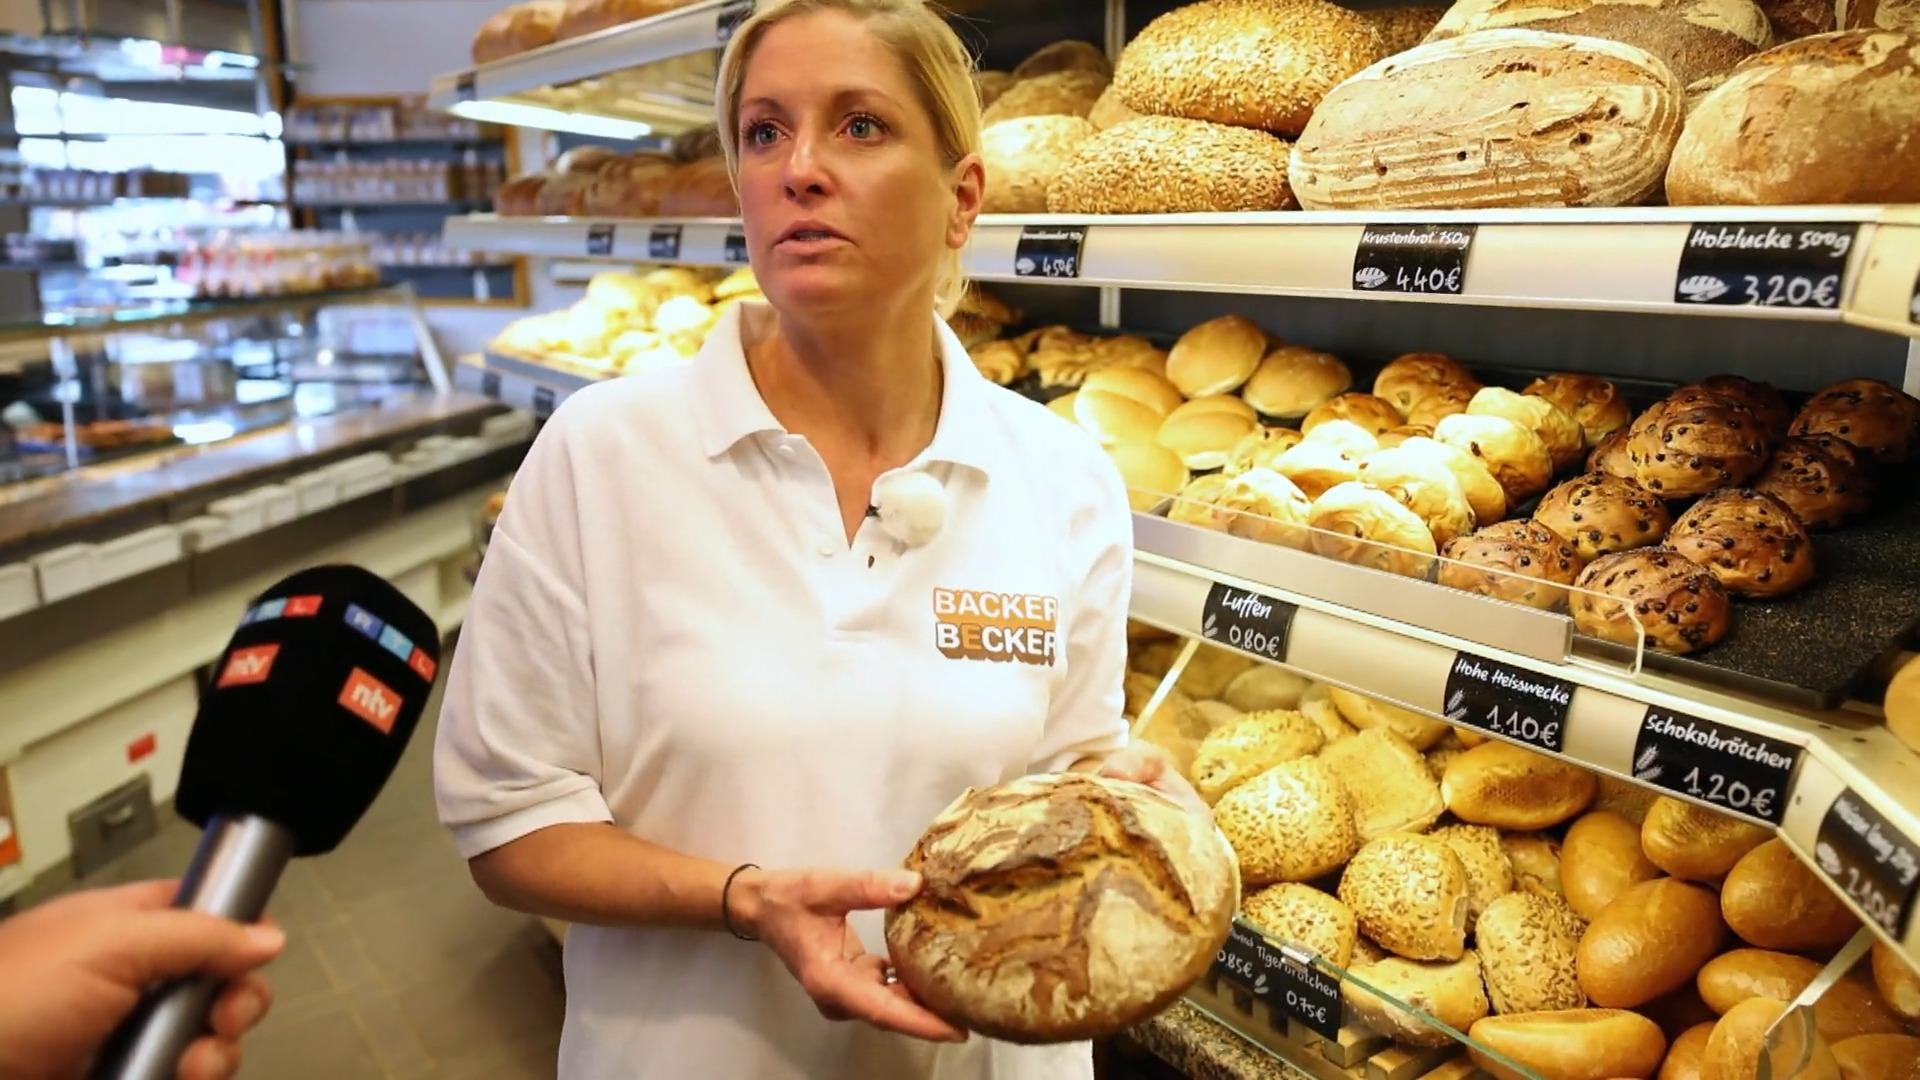 Bäckereien kämpfen um steigende Preise